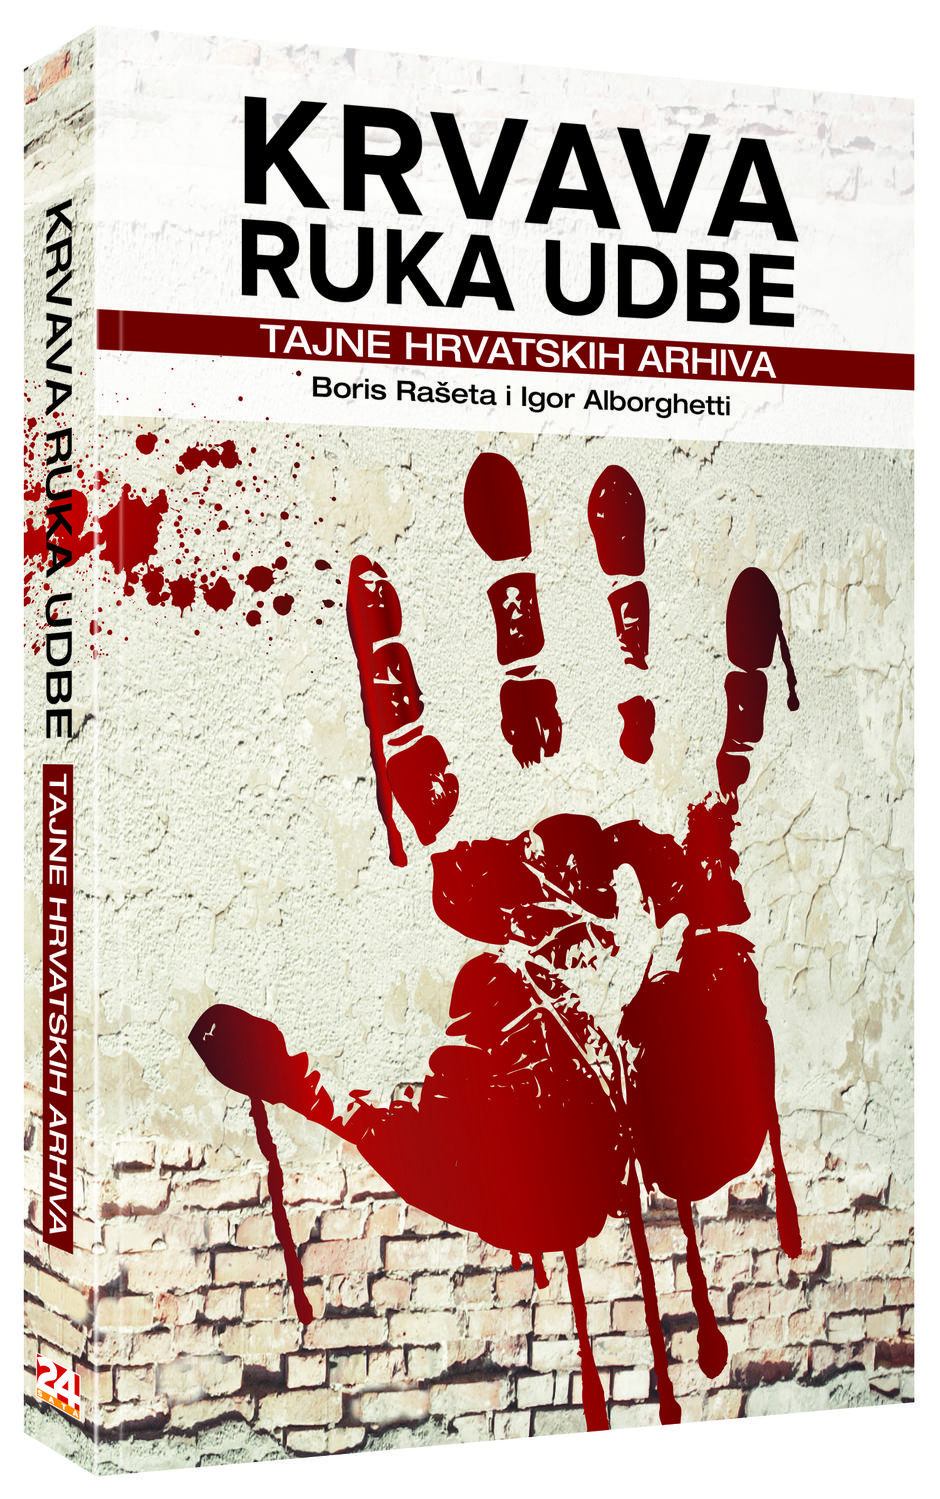 Naslovnica knjige "Krvava ruka Udbe" | Author: express